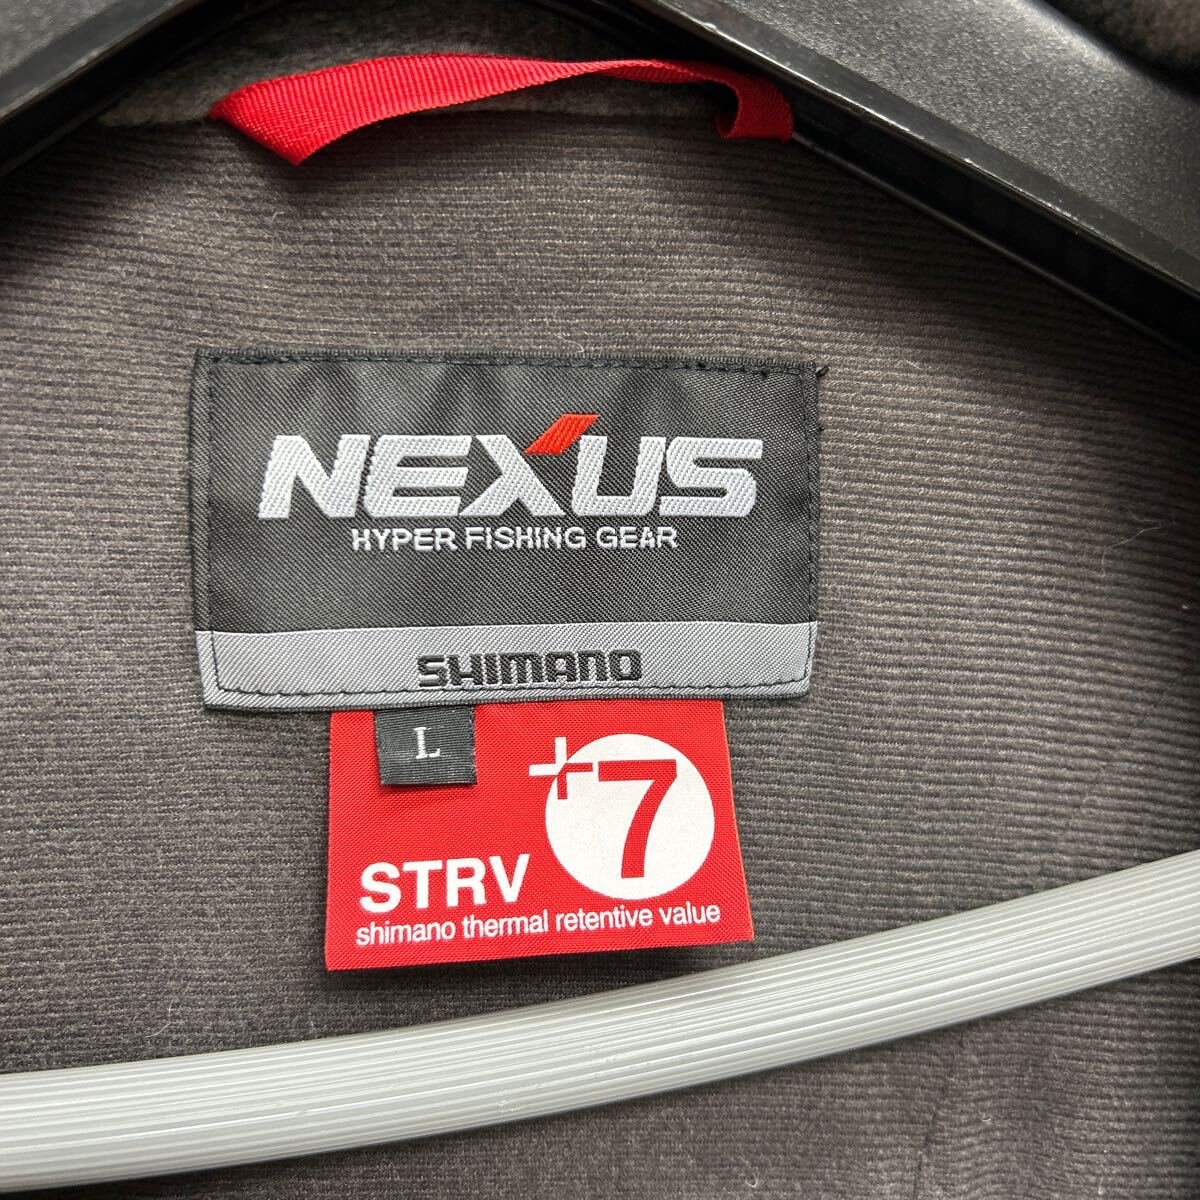 シマノ ネクサス SHIMANO NEXUS フィッシングジャケット Lサイズ STRV+7 アウトドア 釣り フィッシングウェア _画像4